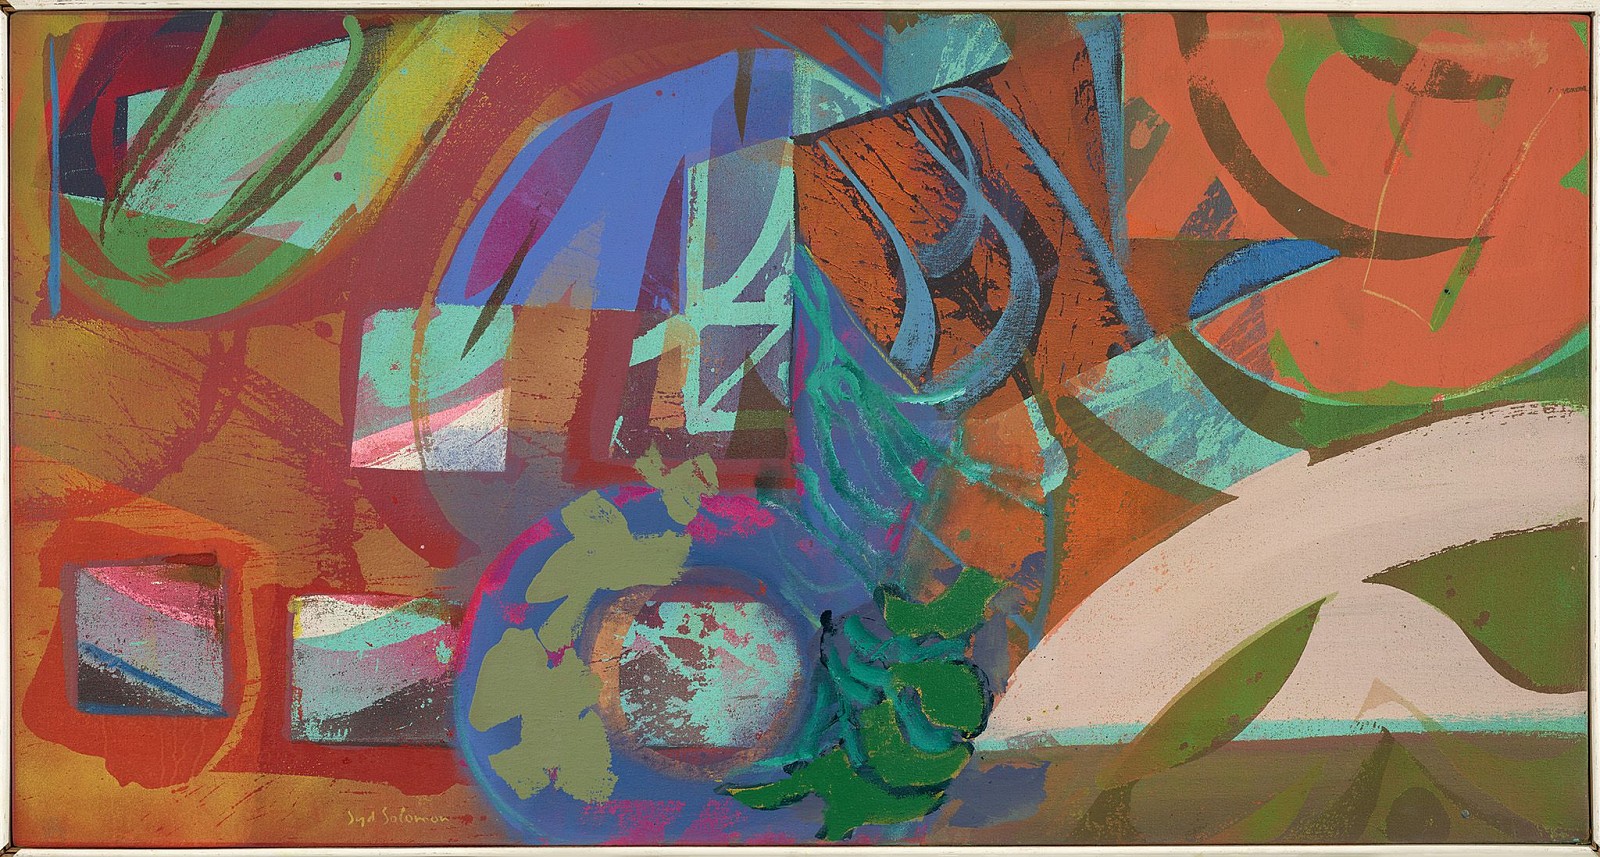 Syd Solomon, Daystart, 1979
Acrylic and aerosol enamel on canvas, 26 1/2 x 50 1/4 in. (67.3 x 127.6 cm)
SOL-00212